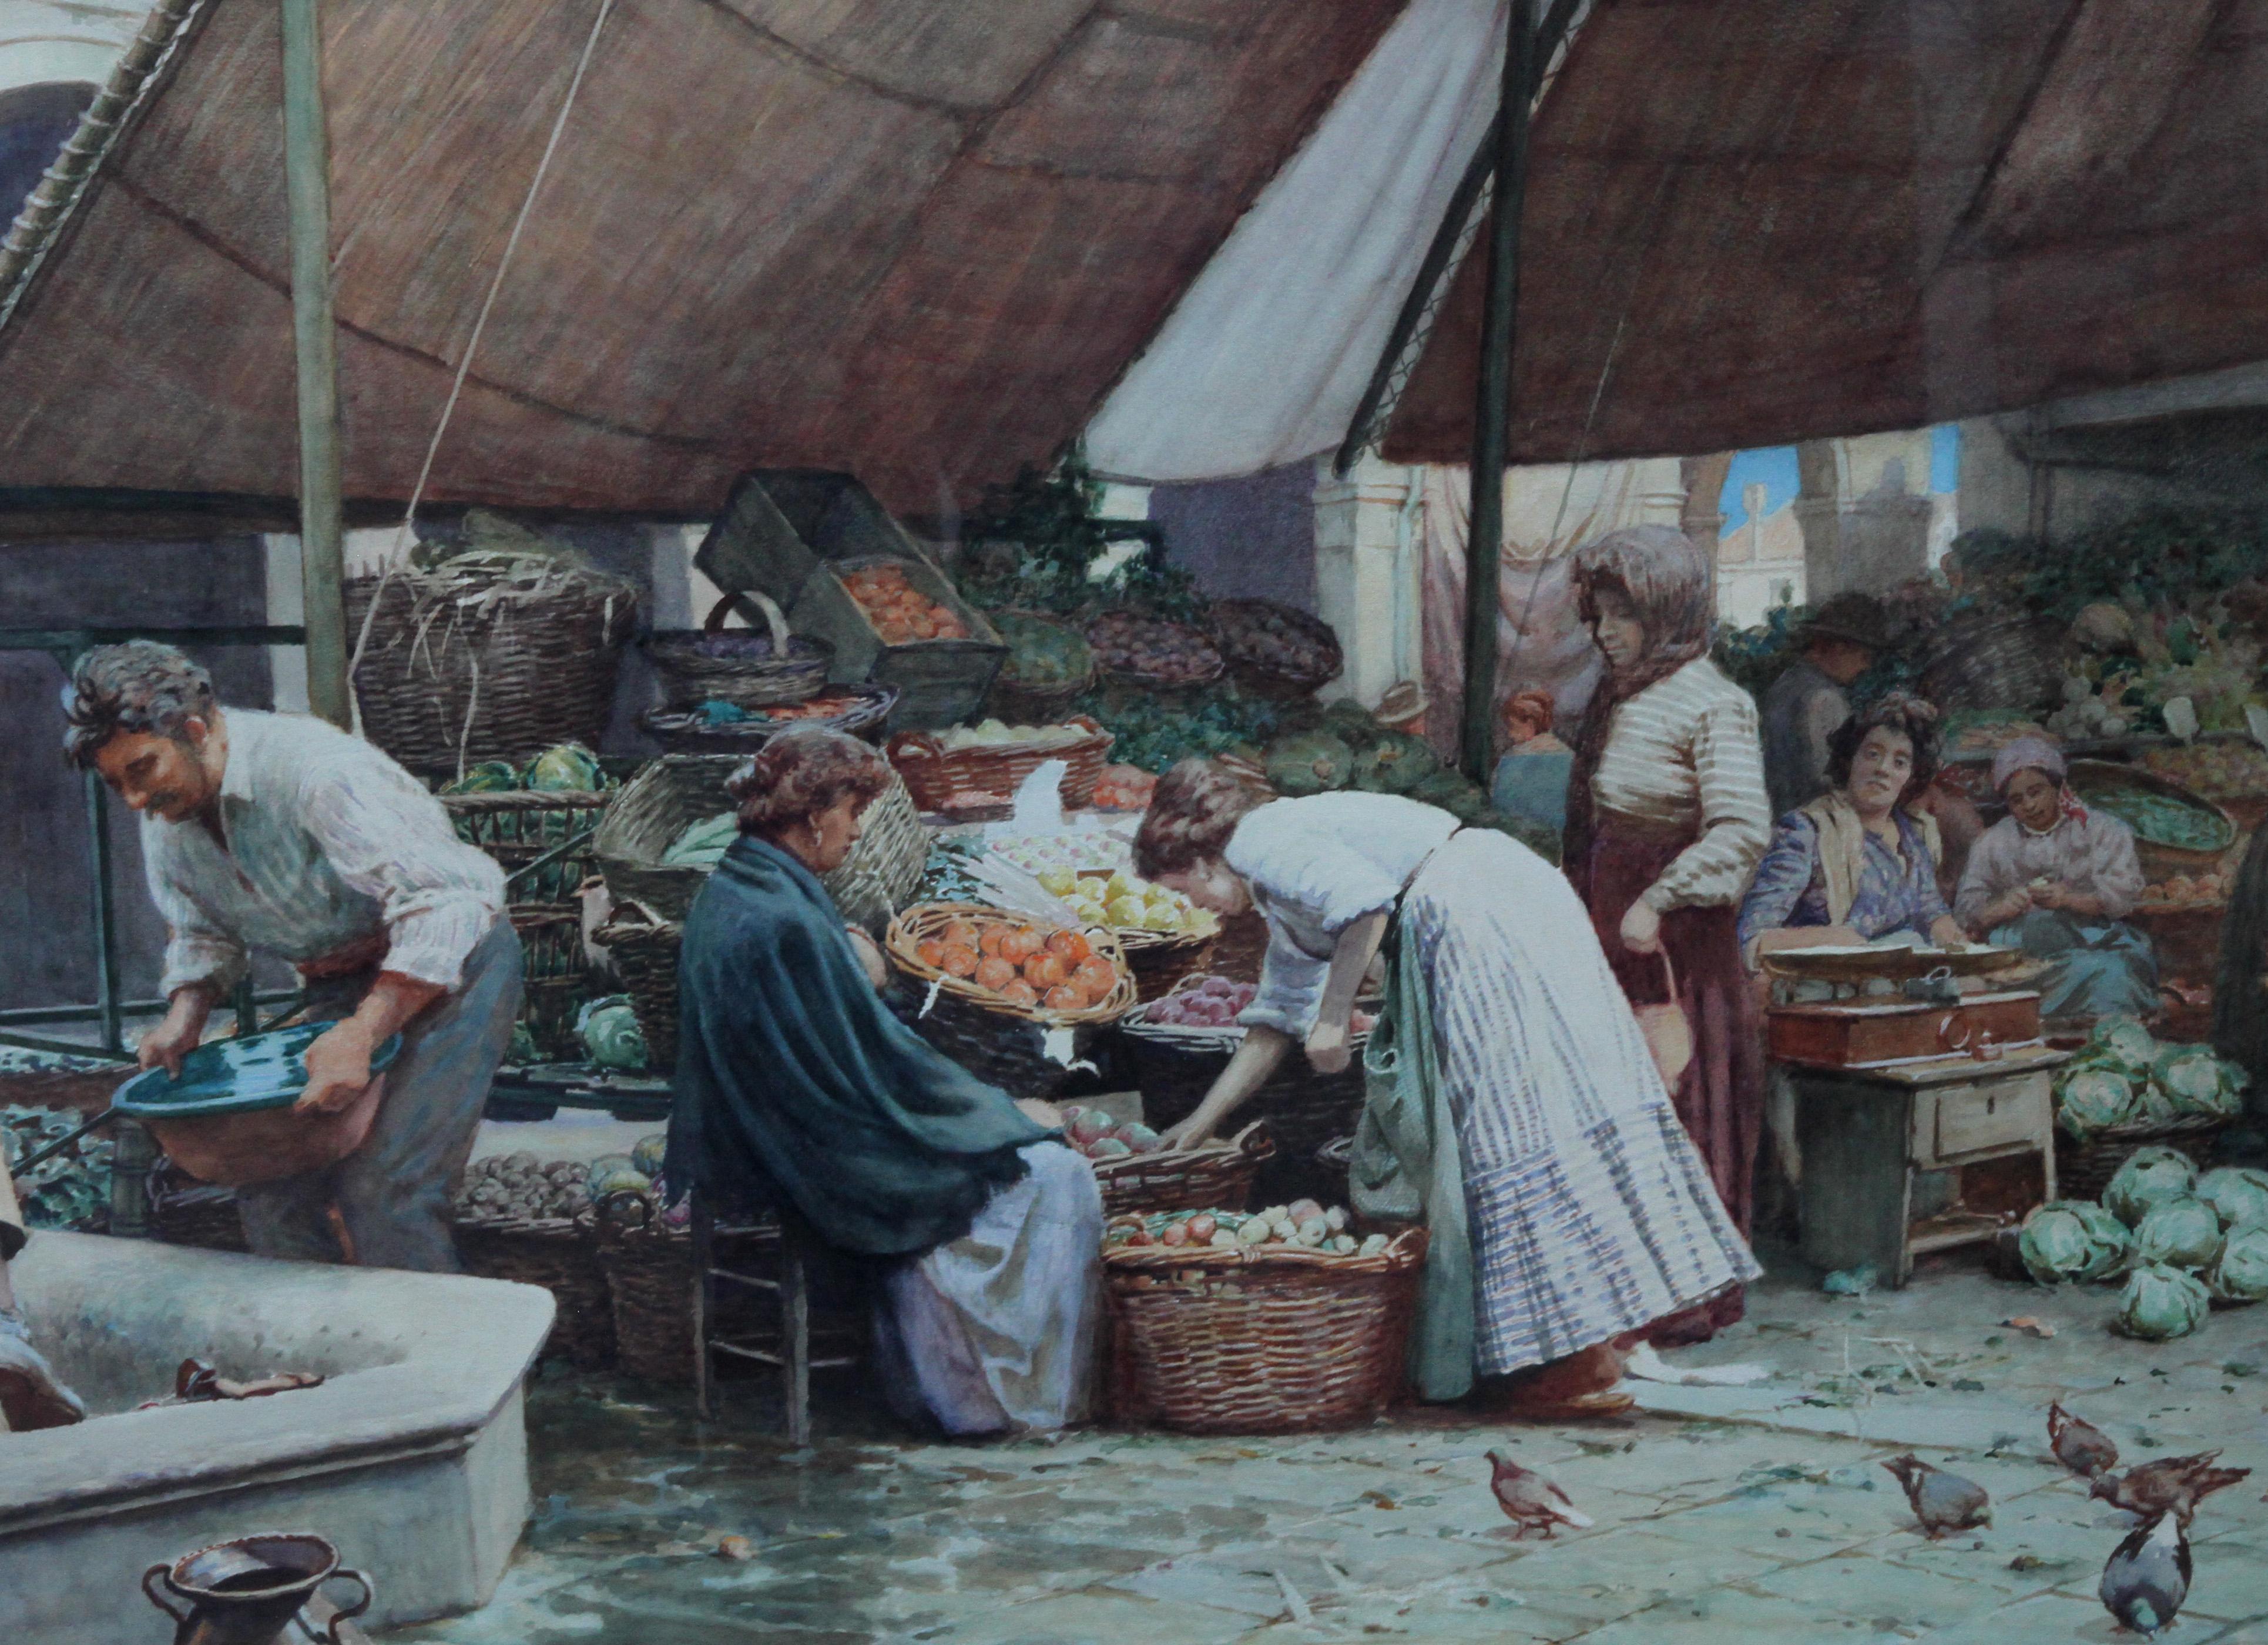 Une belle et grande aquarelle de l'artiste britannique Thomas Ellison, qui a exposé à la Royal Academy et aux British Art Institutions. Il s'agit d'une scène animée représentant le marché de Venise avec de nombreux personnages. Peinte vers 1900,